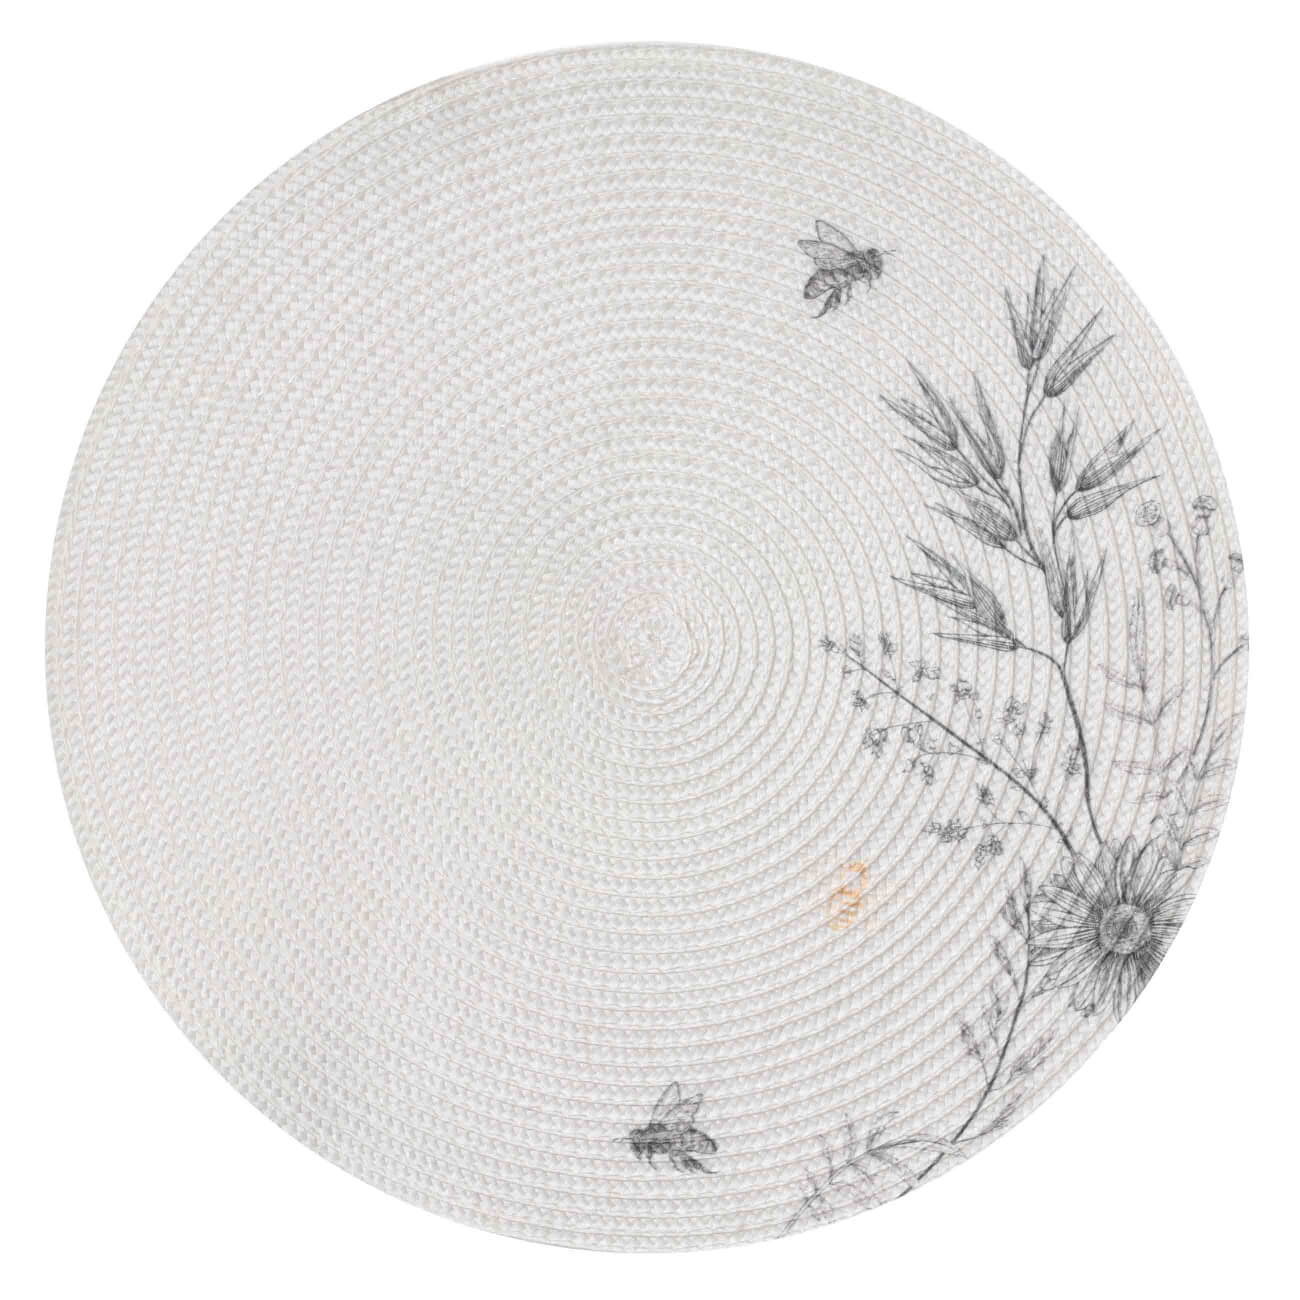 Салфетка под приборы, 38 см, полипропилен/полиэстер, круглая, серо-бежевая, Цветы и пчелы, Circle print